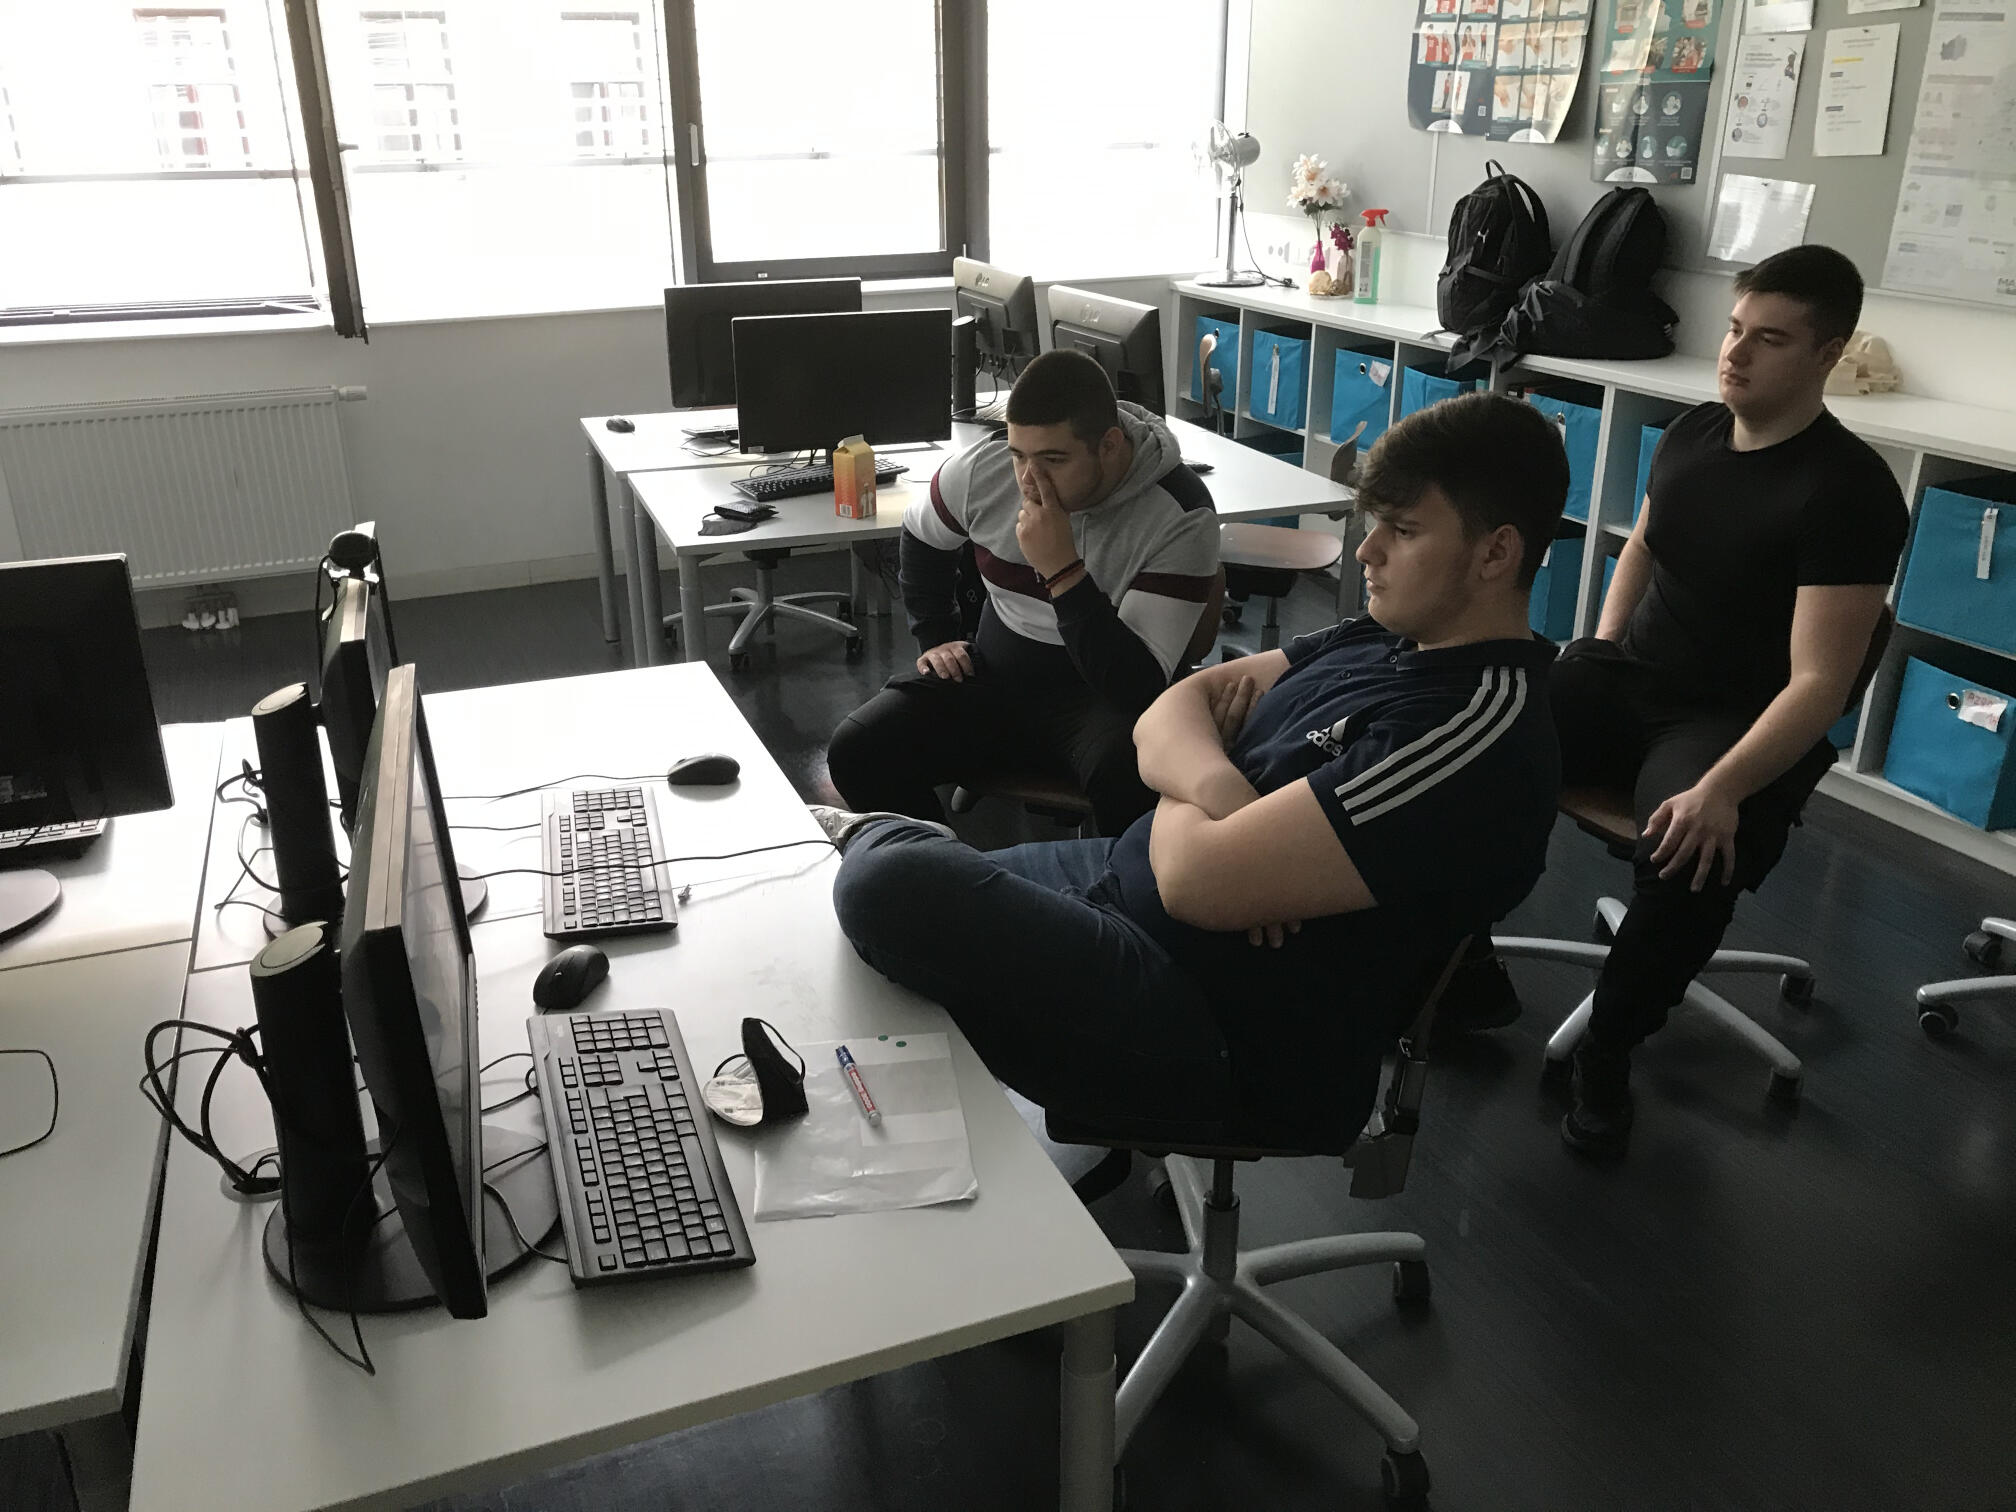 Drei Lehrlinge sitzen an einem Tisch mit Computer